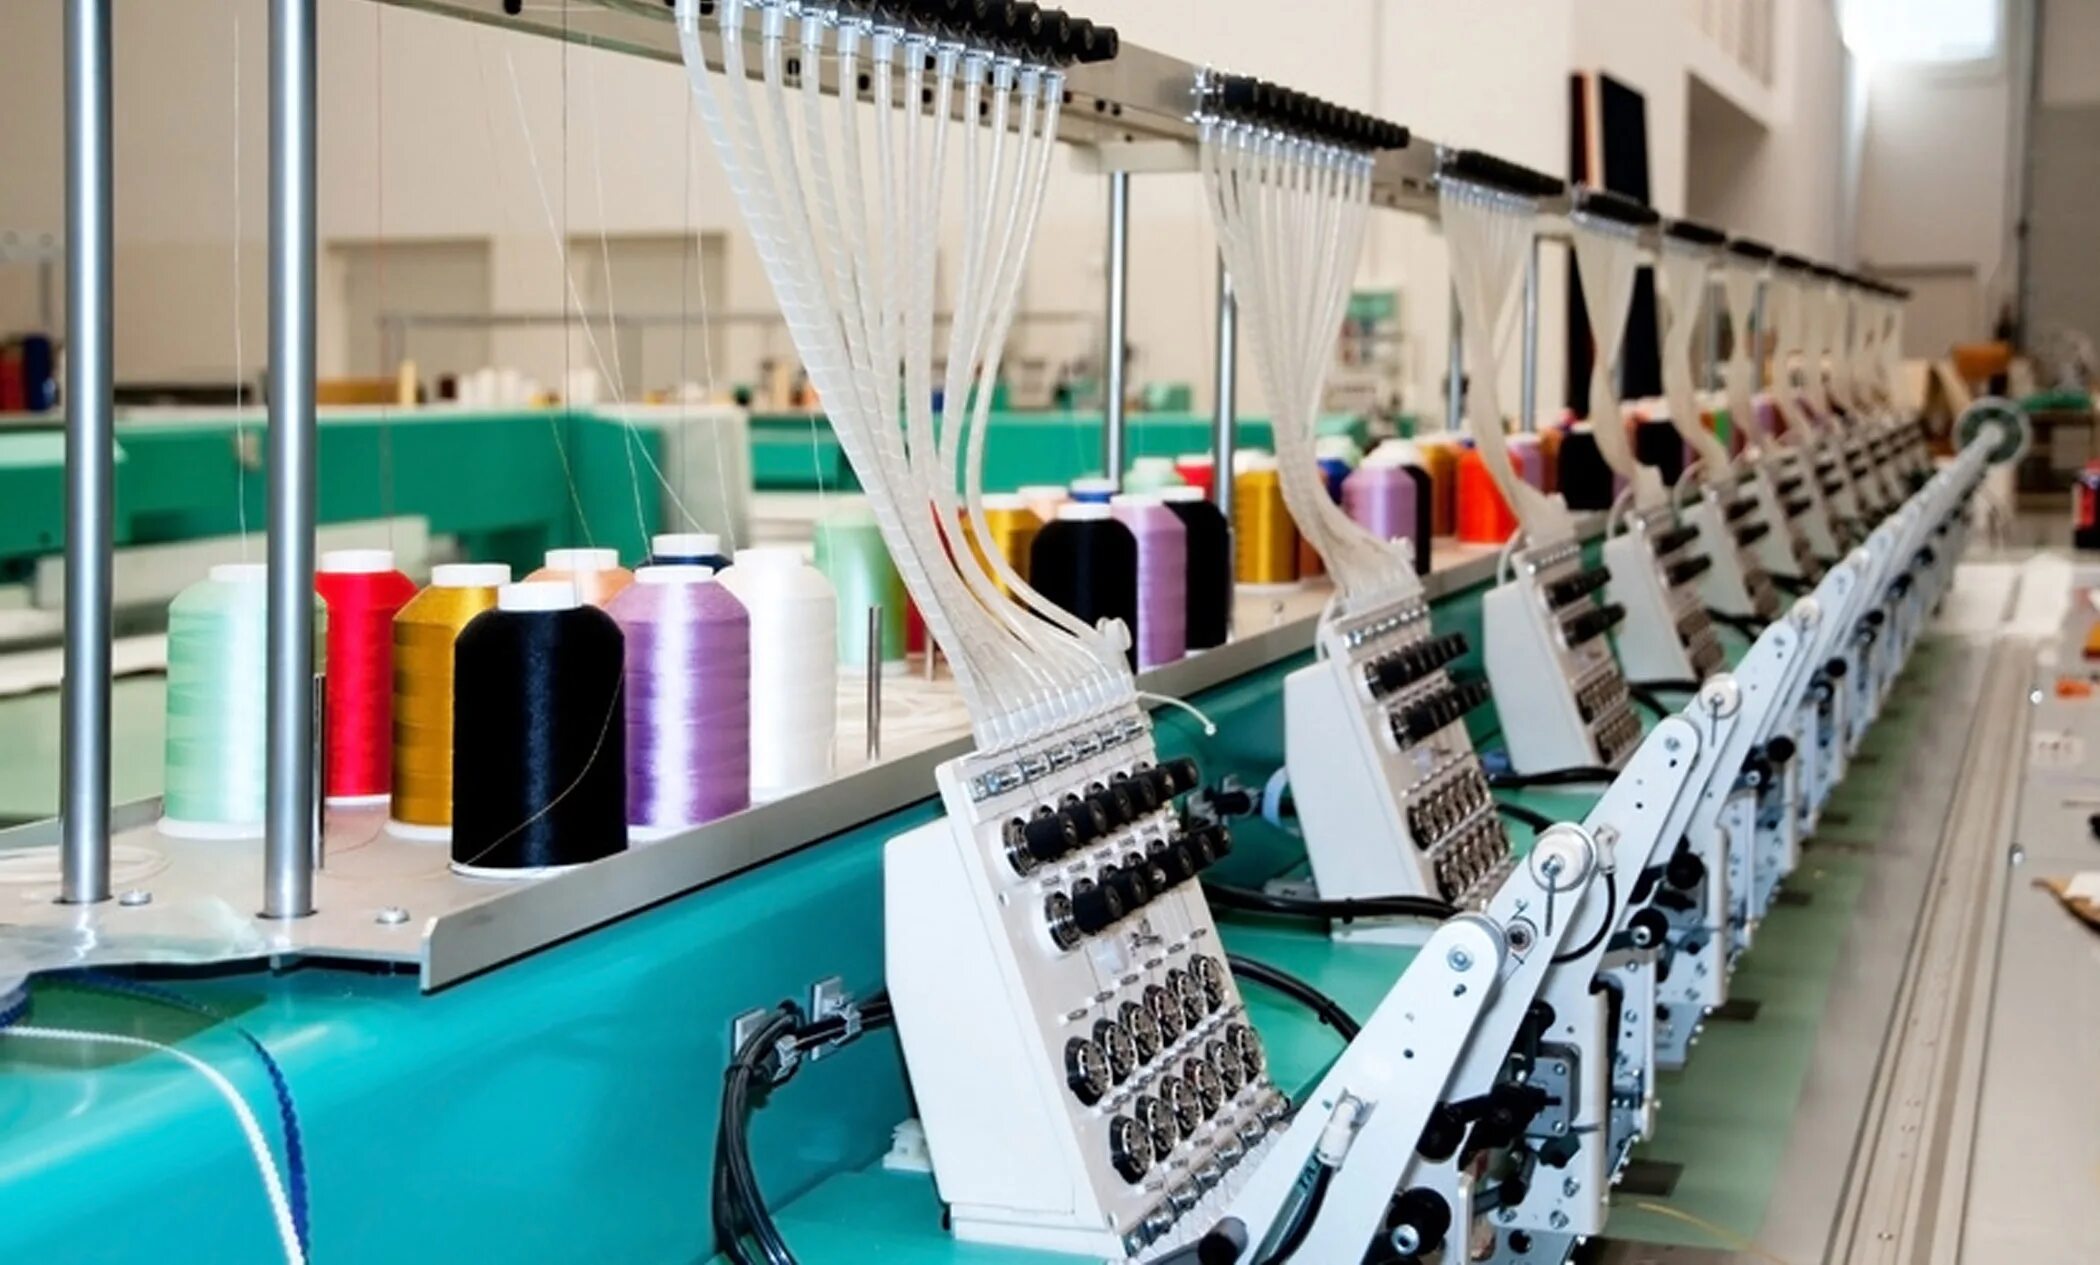 Сайт текстильной фабрики. Текстильная промышленность. Текстильное производство. Швейная легкая промышленность. Текстильная и легкая промышленность.